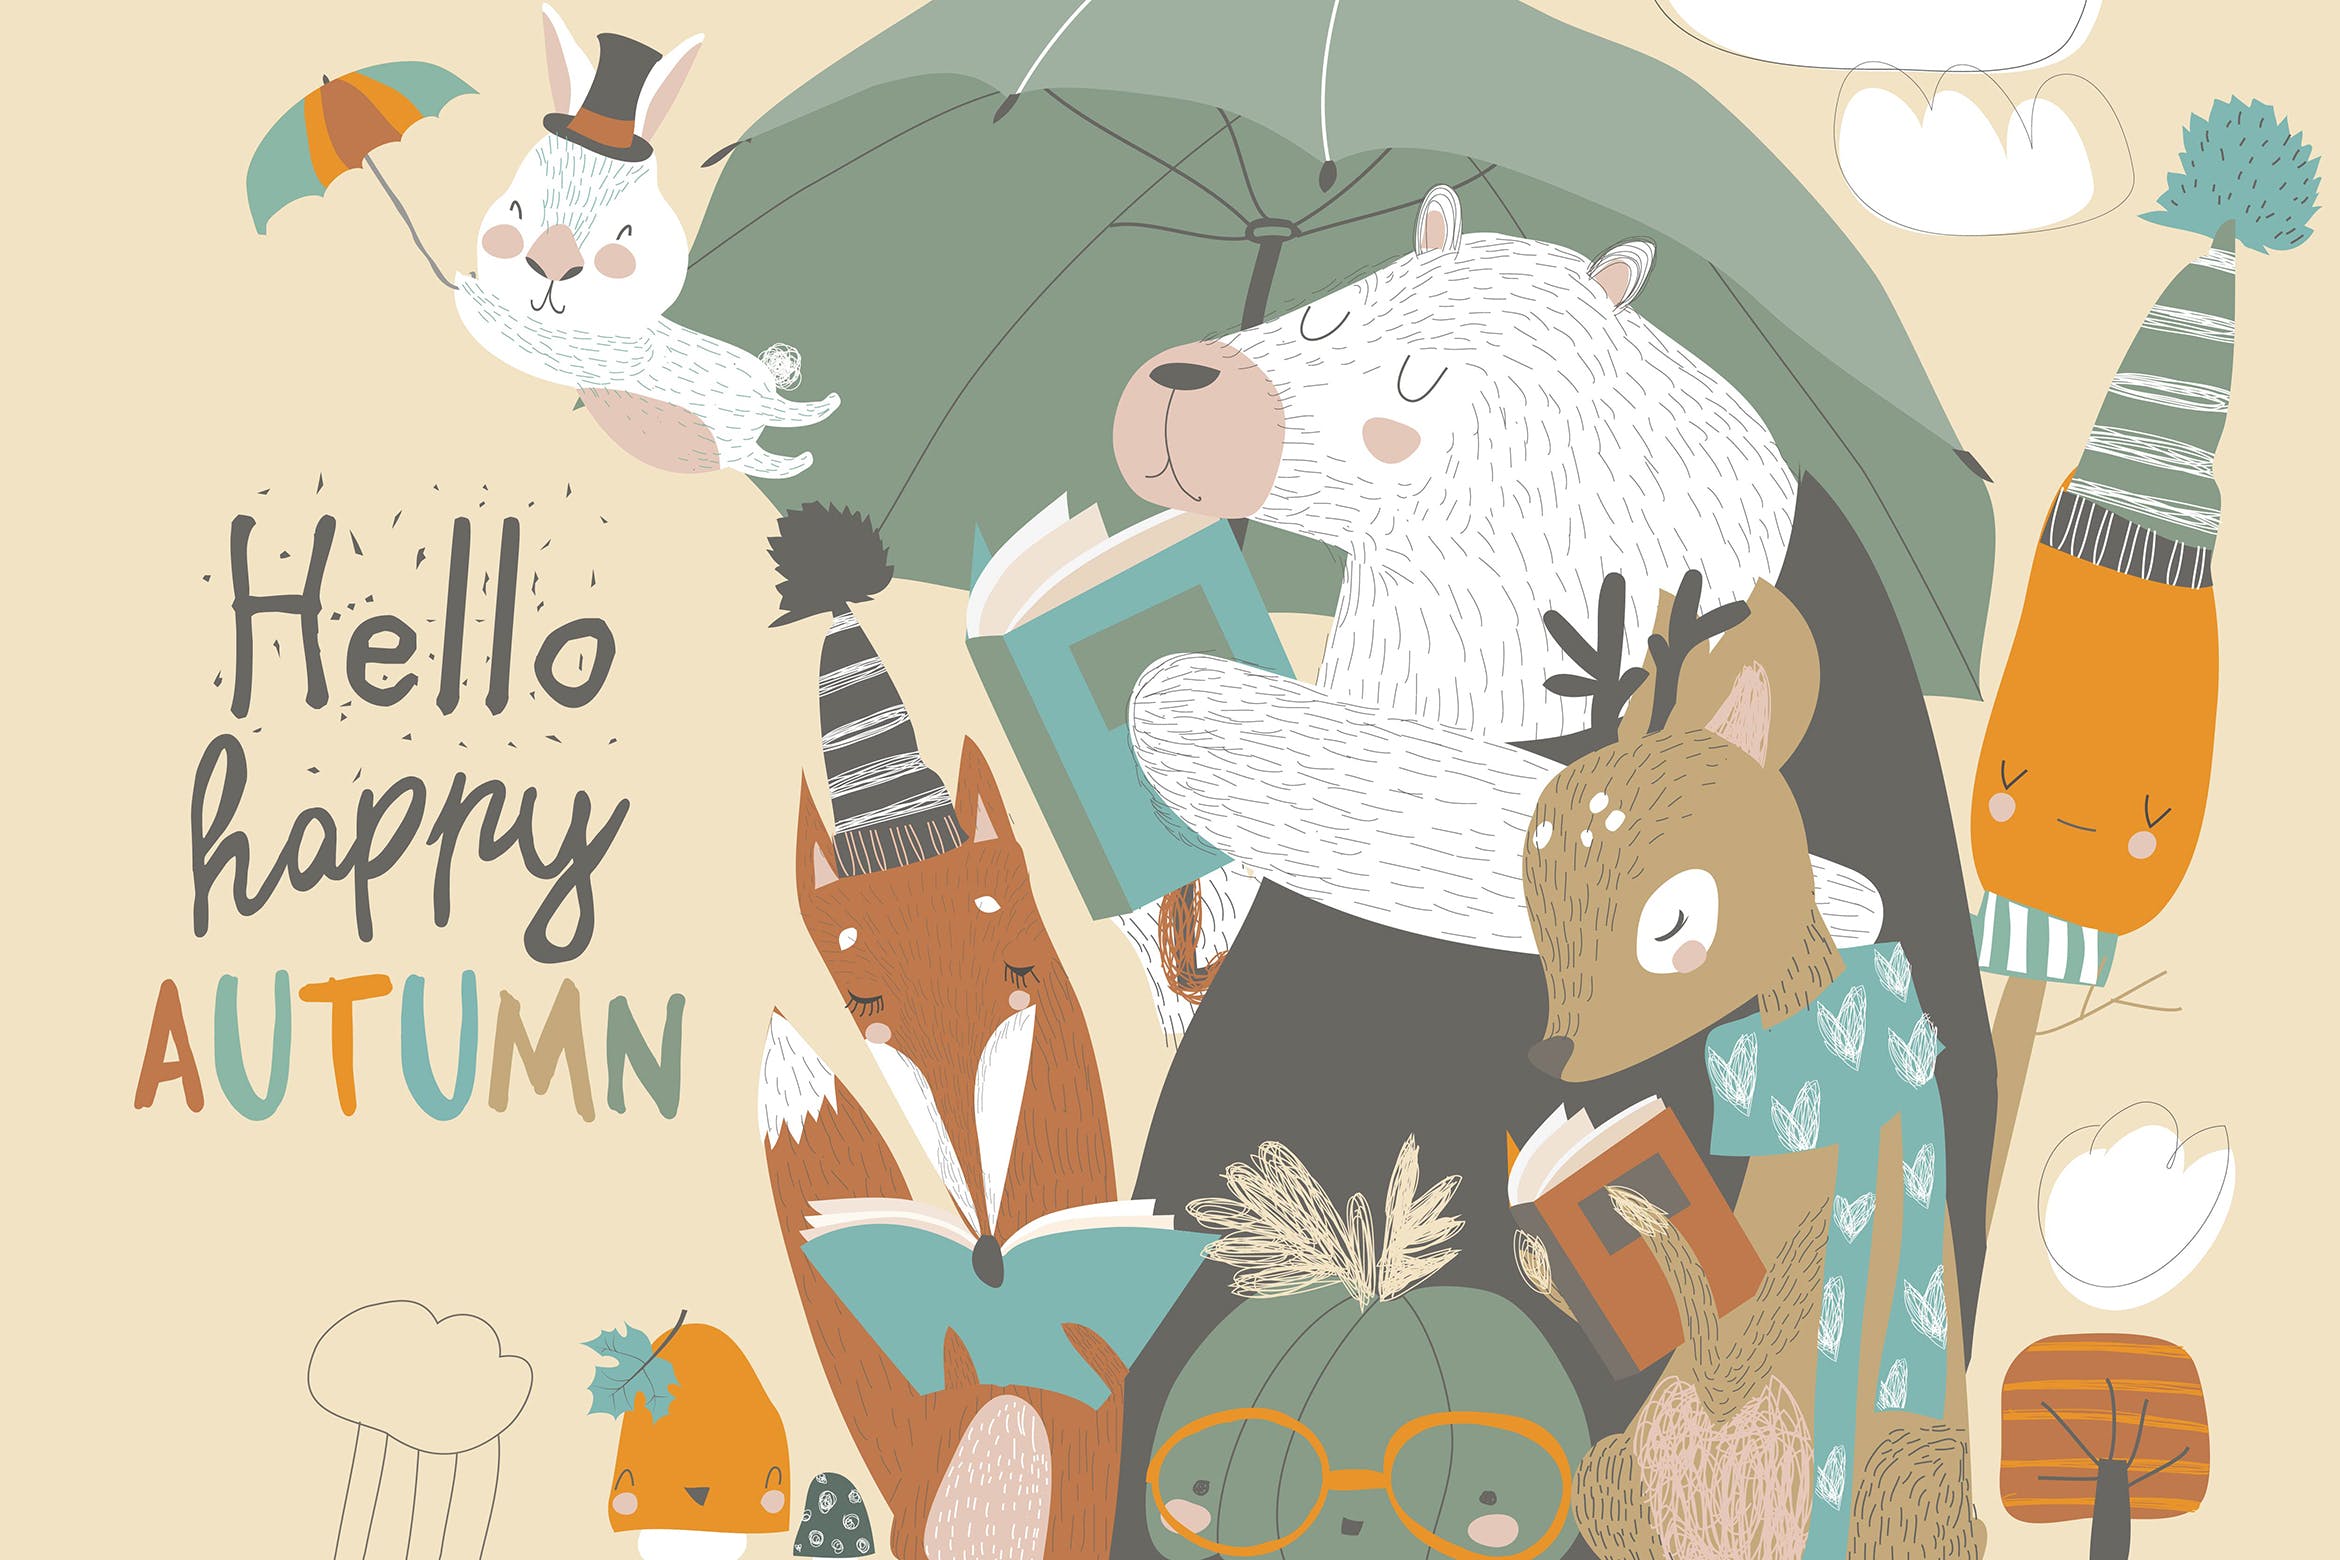 可爱的动物阅读场景蚂蚁素材精选手绘插画矢量素材 Funny animals read books under umbrella. Autumn ti插图